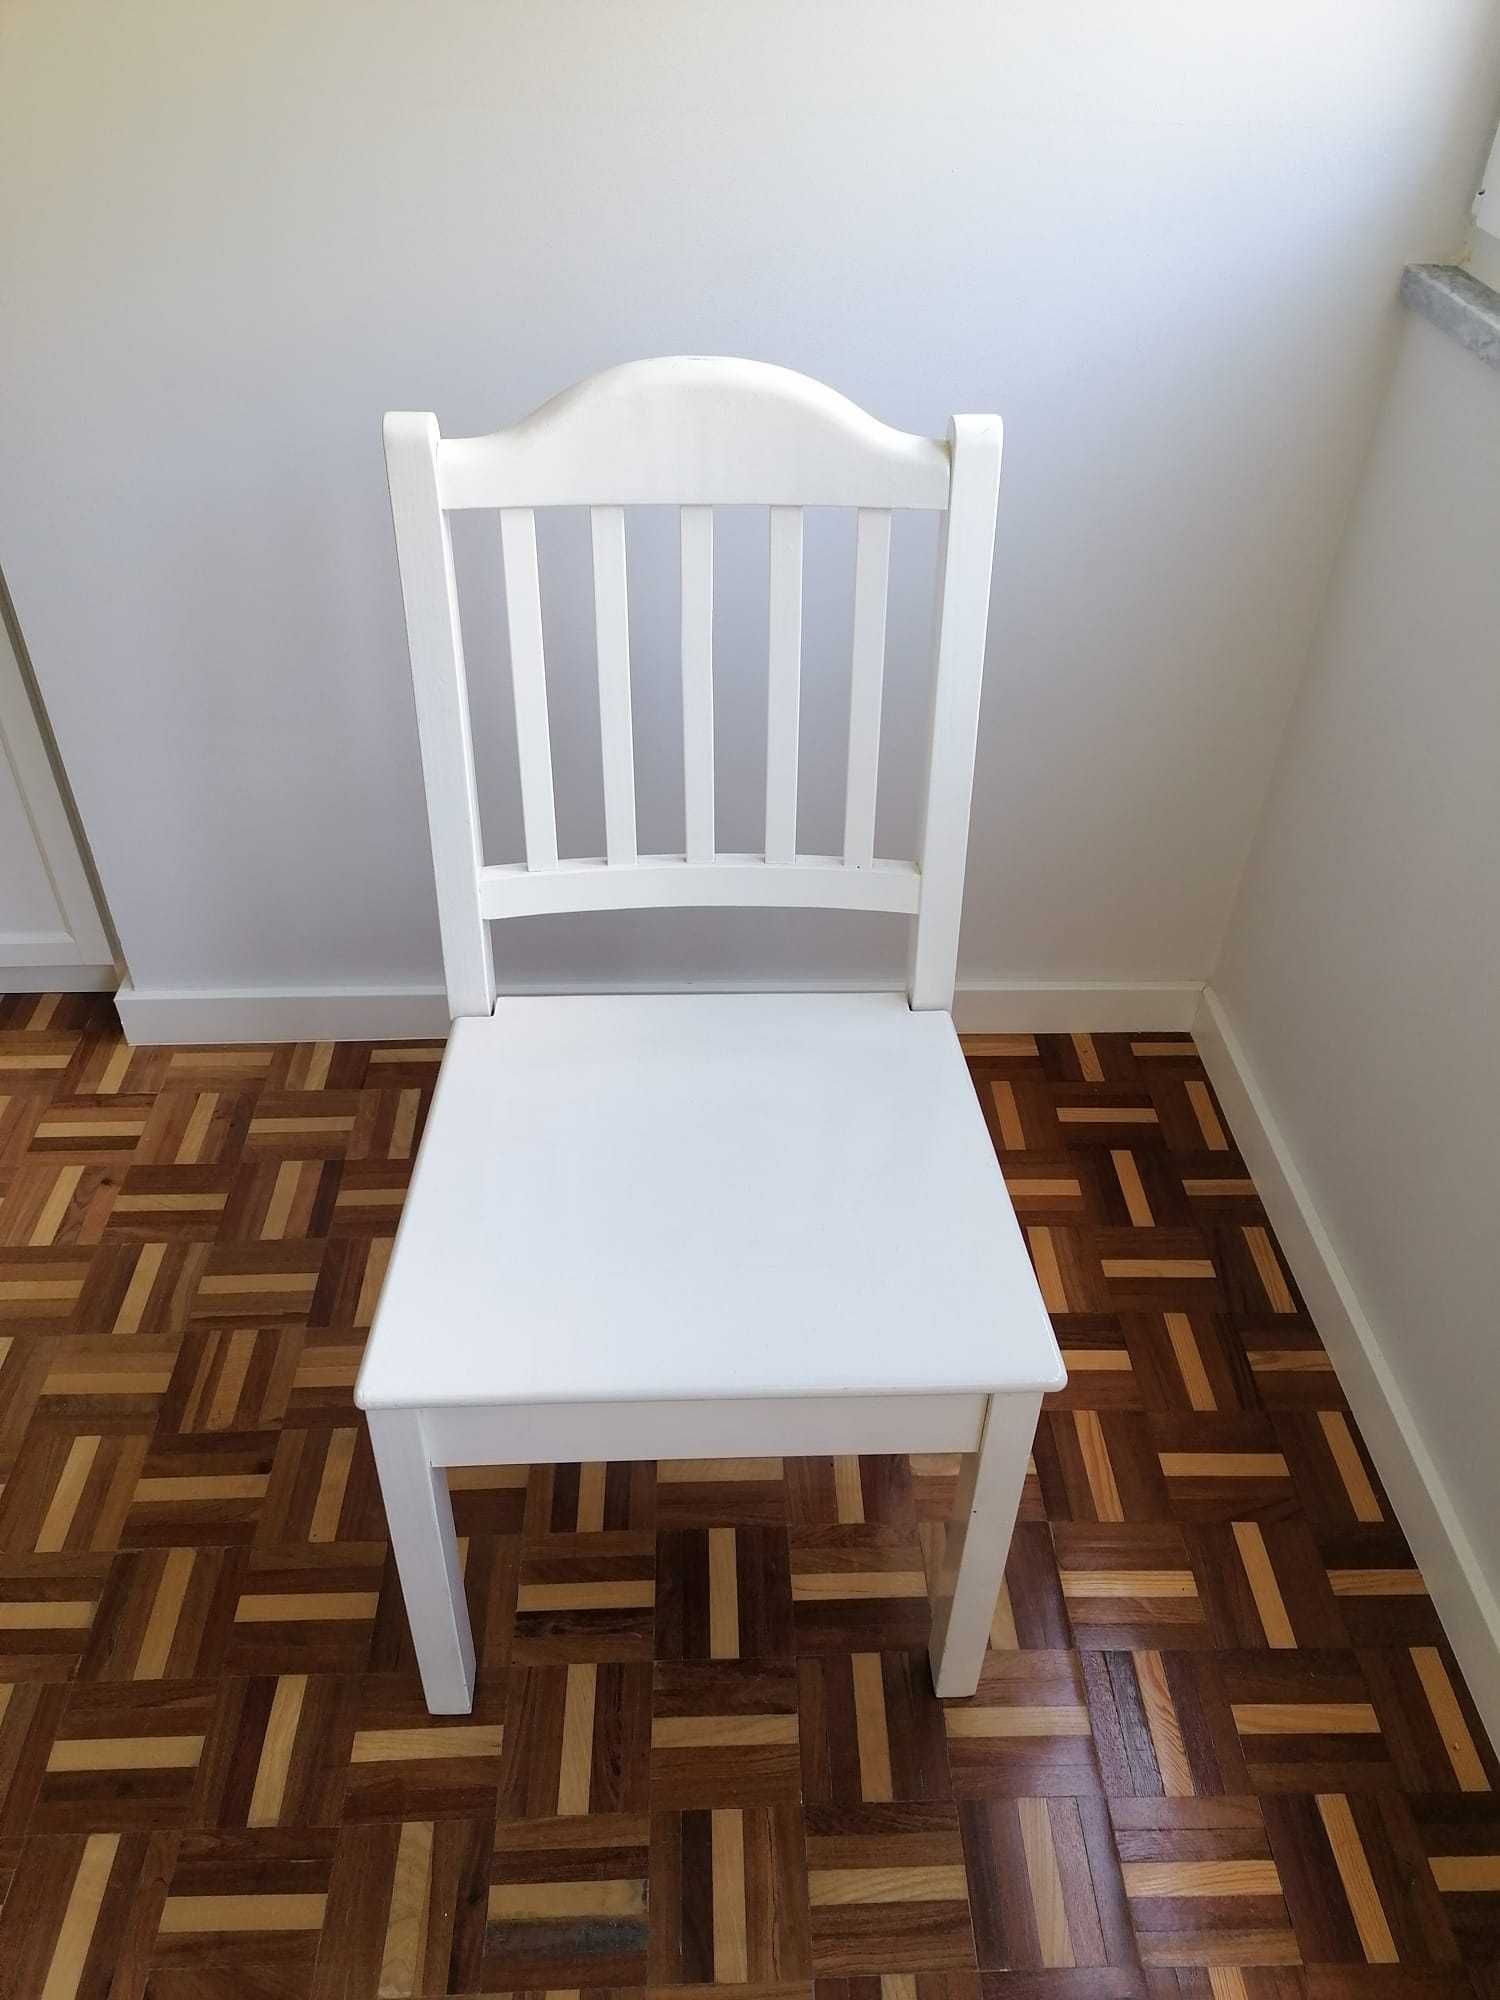 6 Cadeiras de madeira Branca - Cerejeira